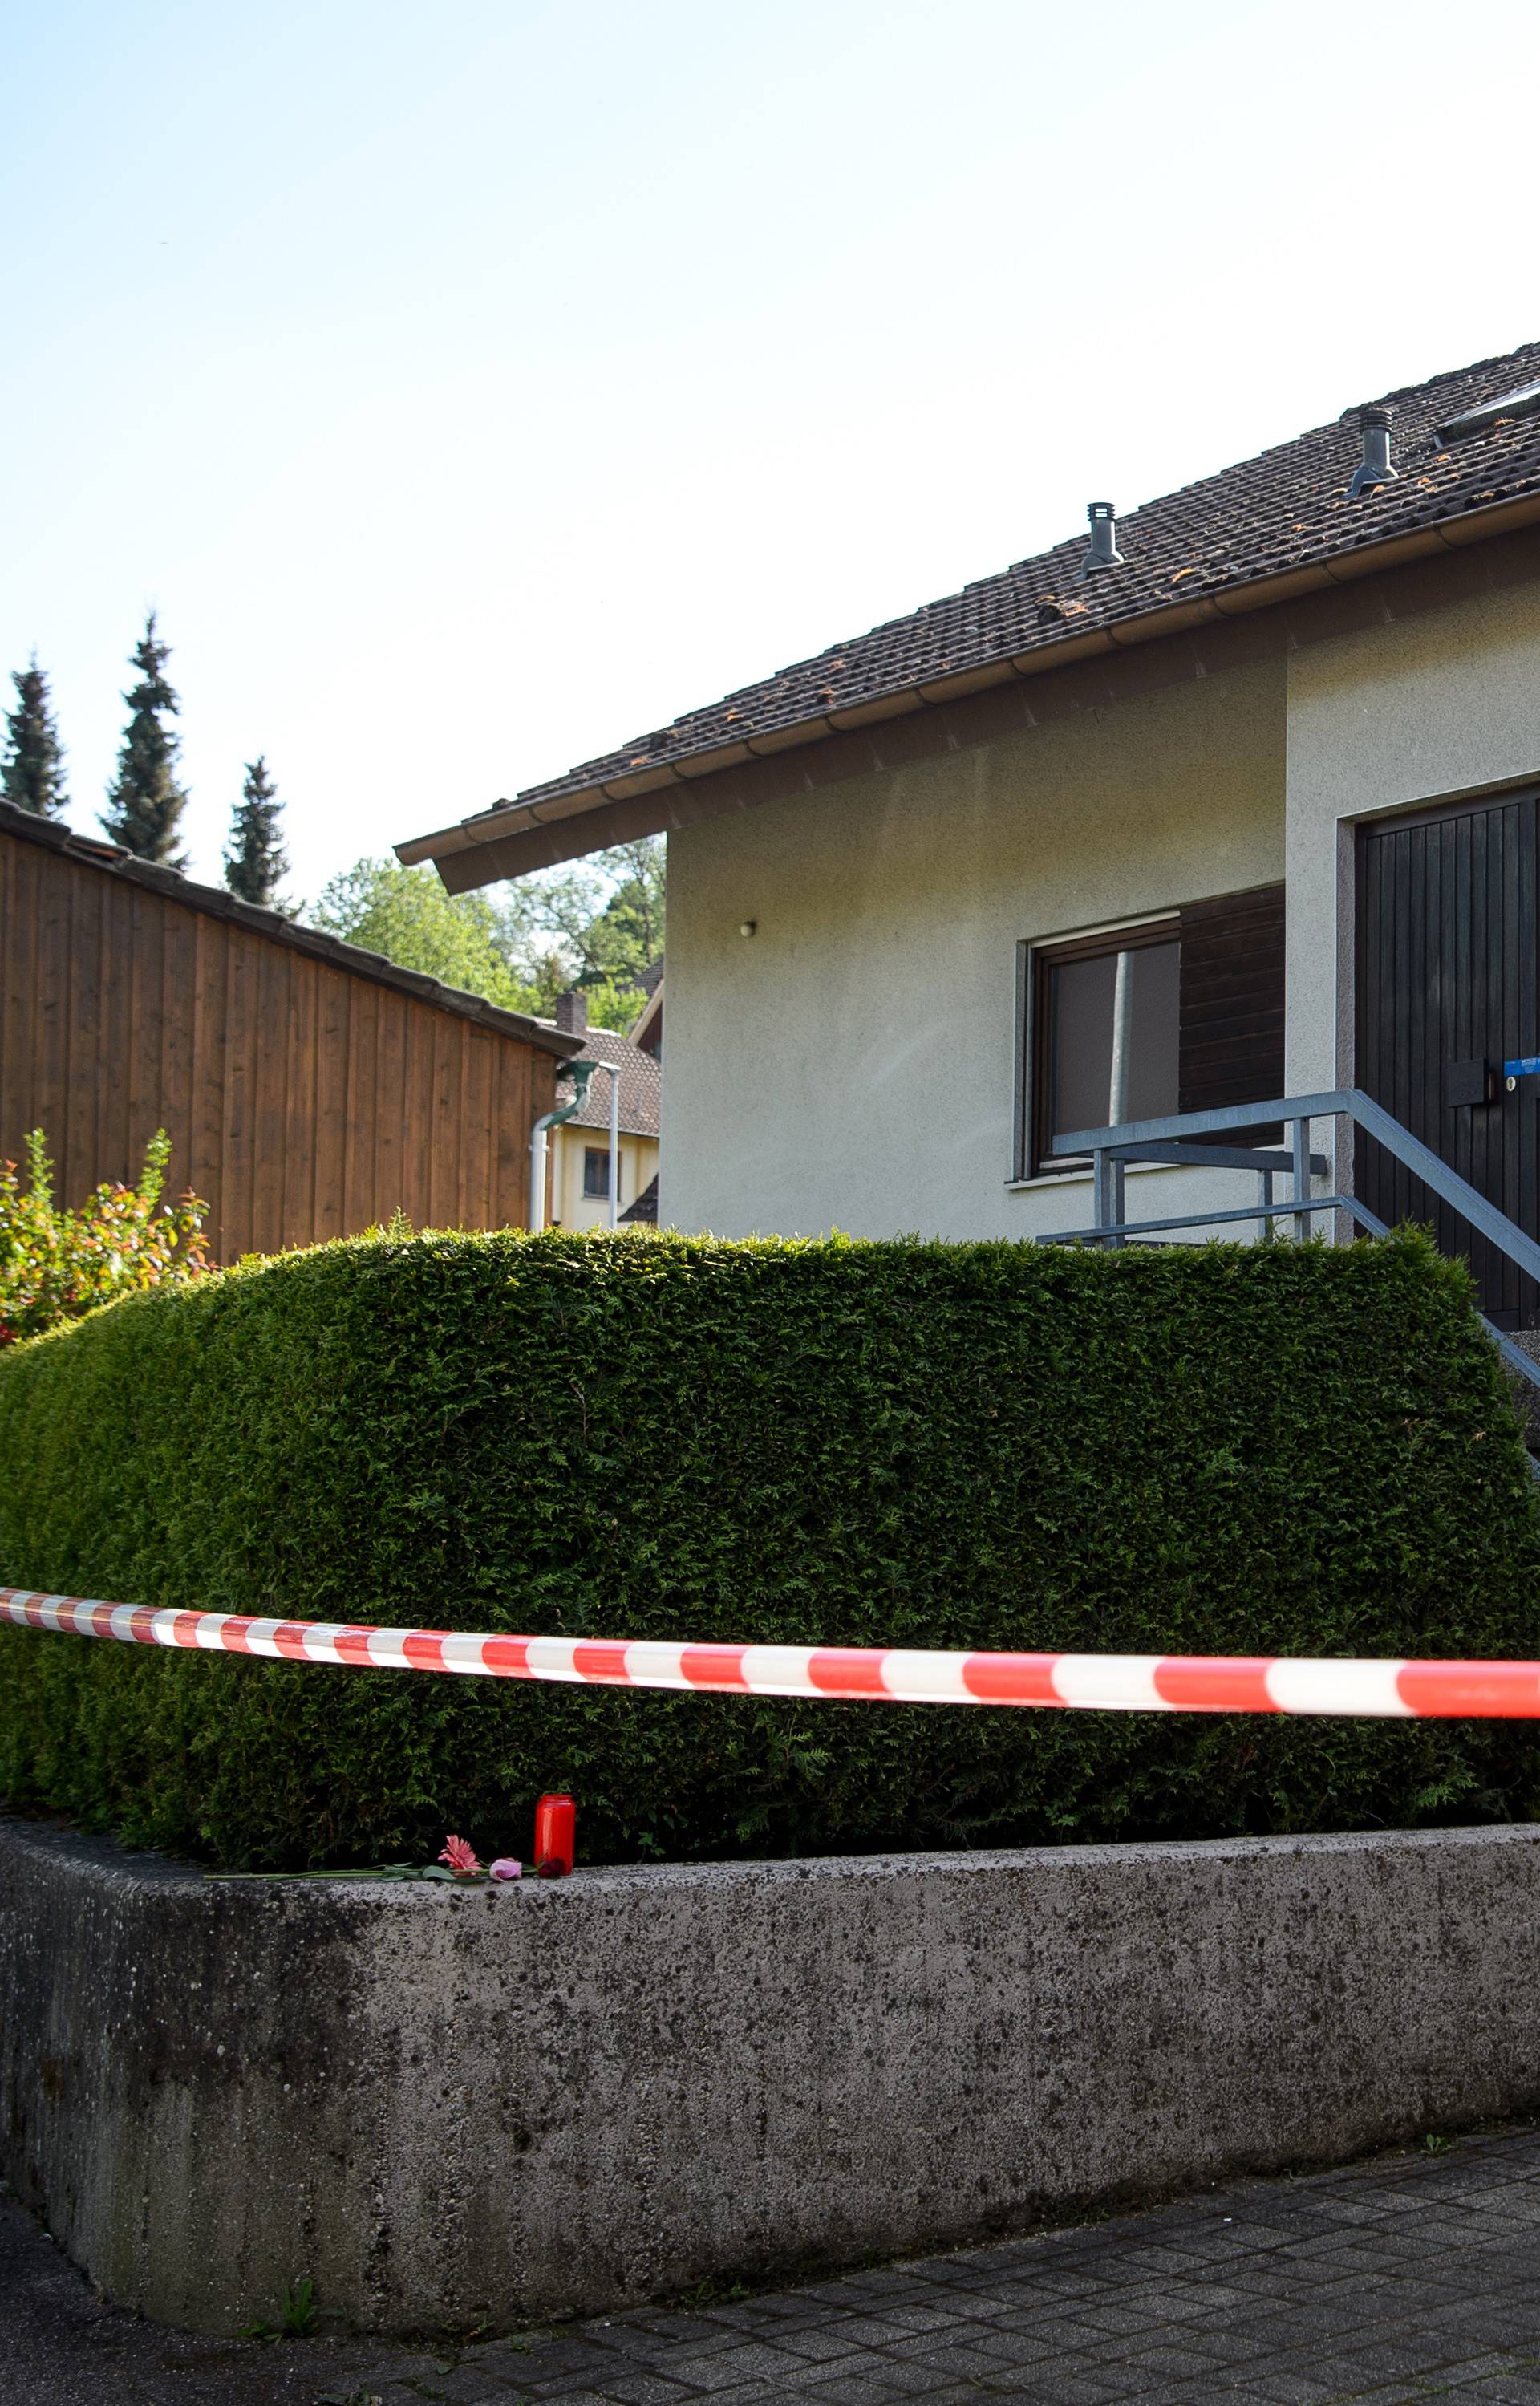 Seven year old child dies in Kuenzelsau